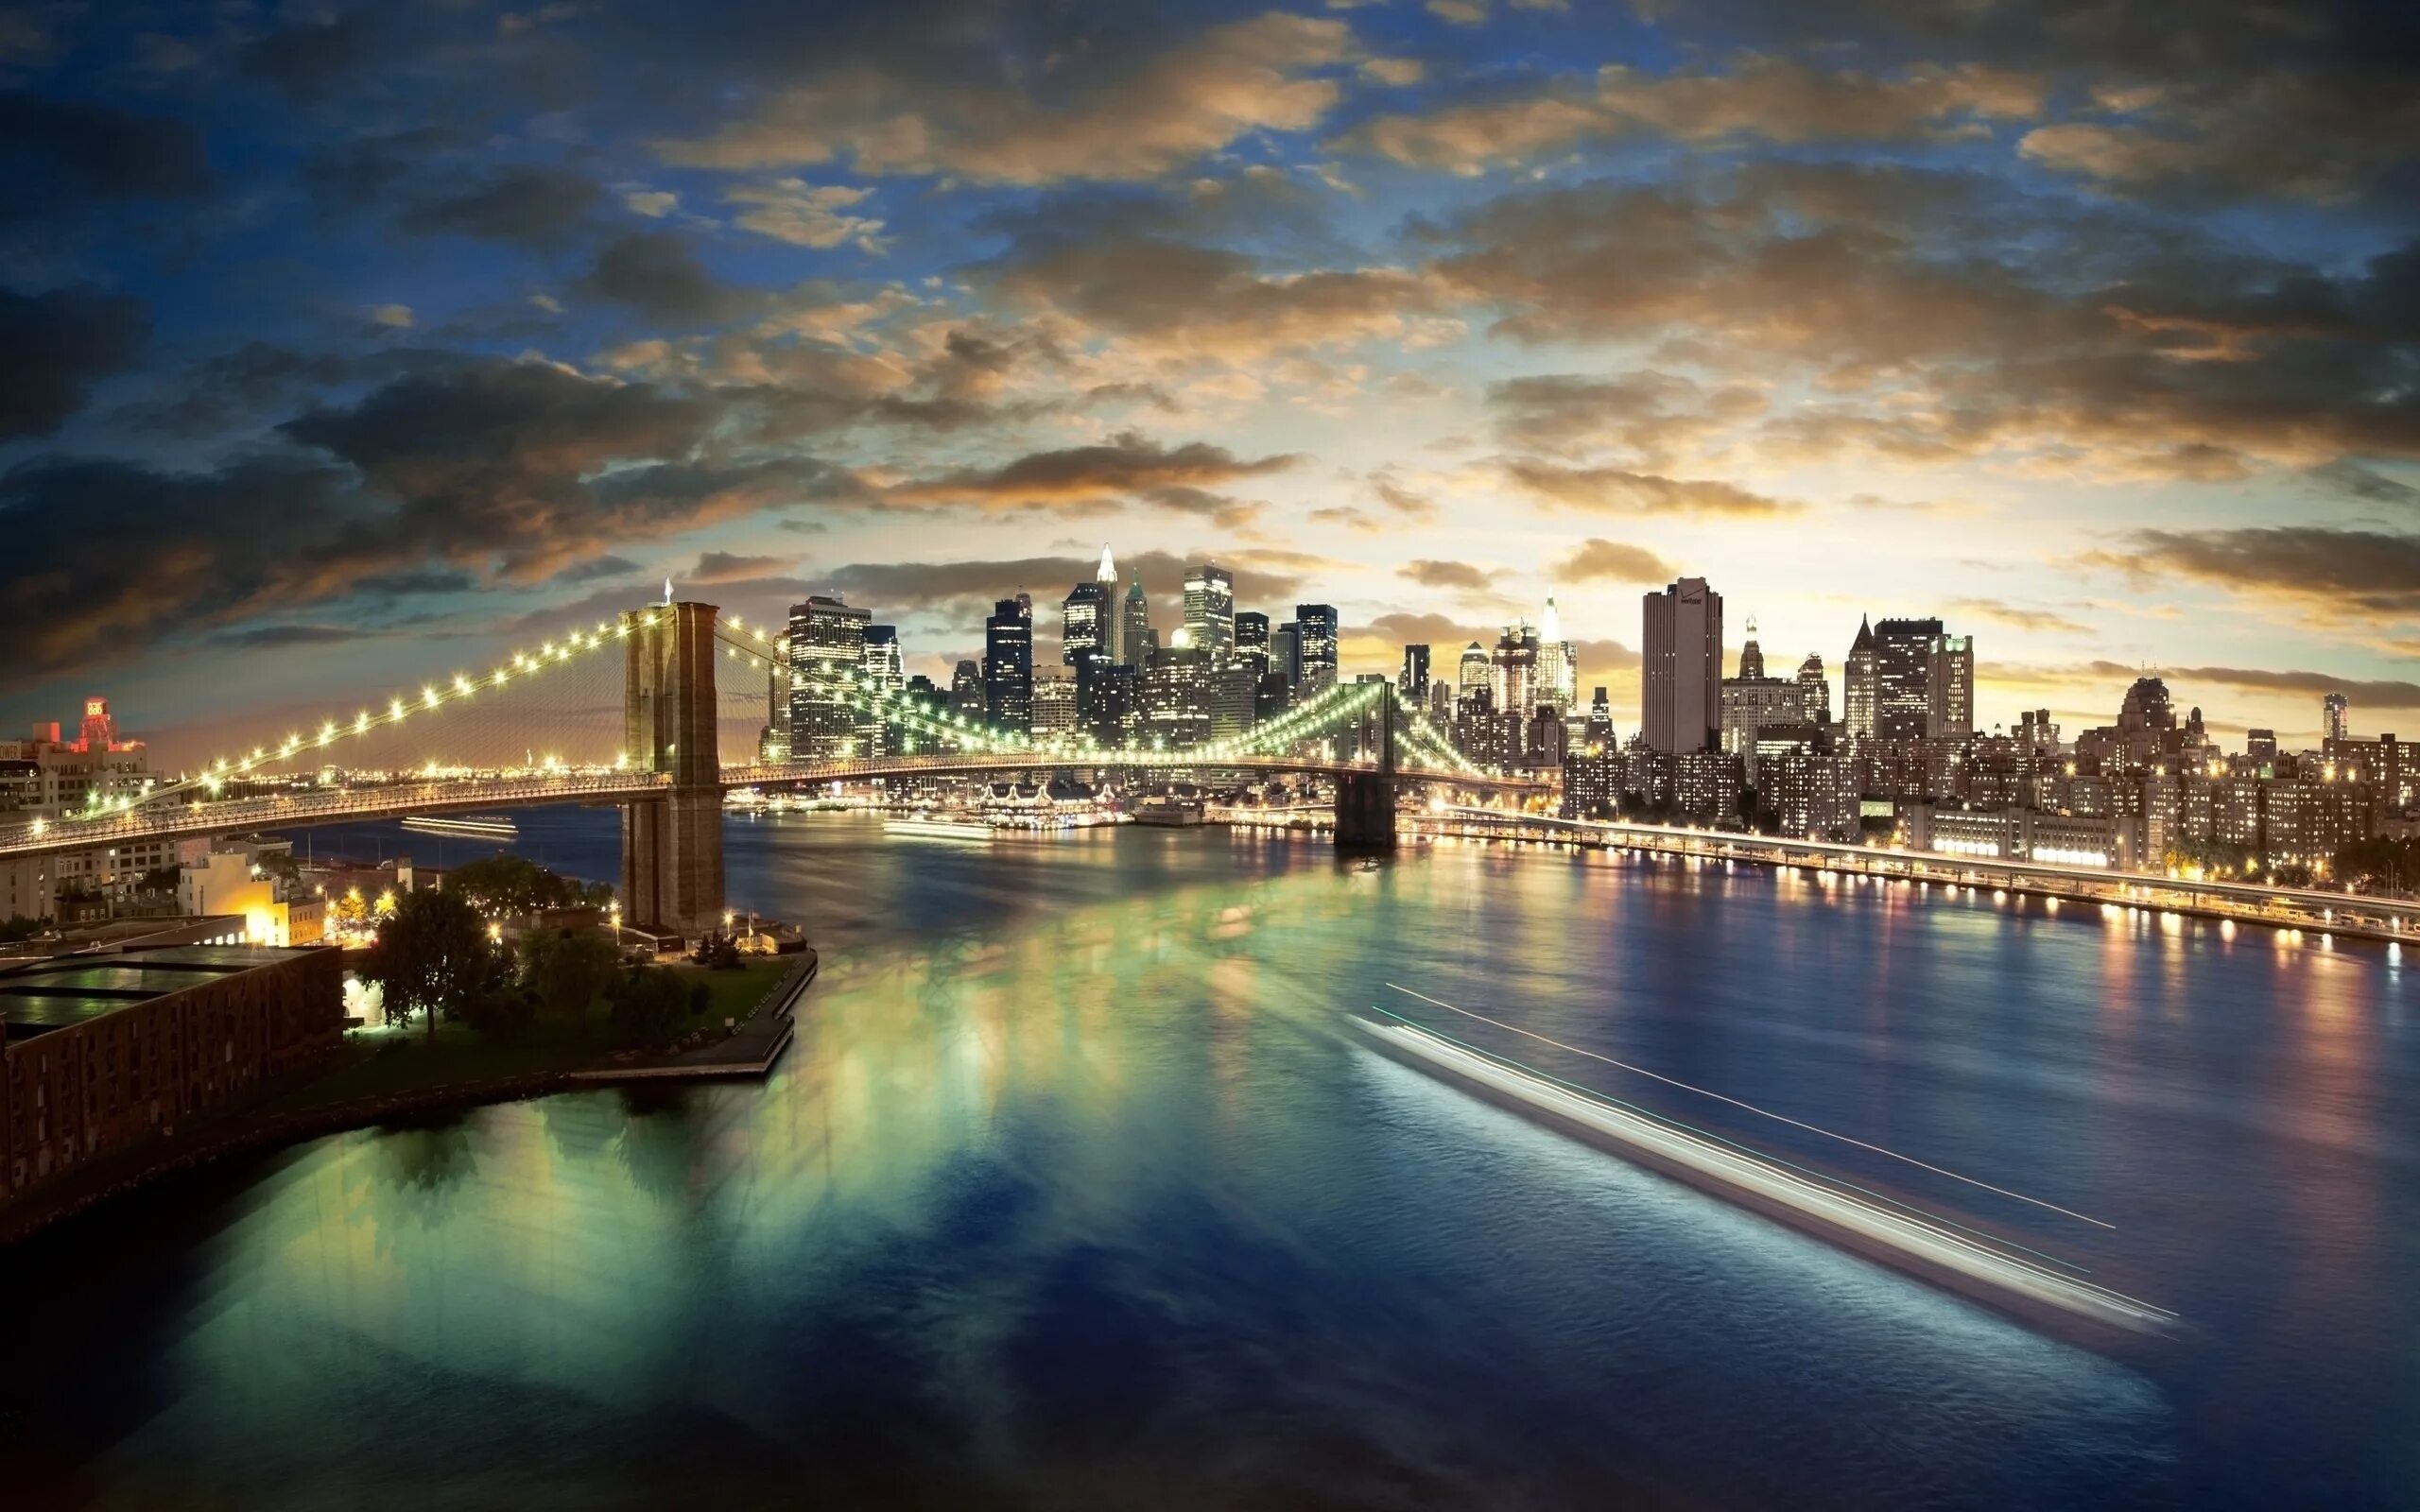 Обои 2560 1600. Бруклинский мост Нью-Йорк. Бруклинский мост панорама. Бруклинский мост Нью-Йорк панорама. Мост, Нью-Йорк, река, Манхеттен.